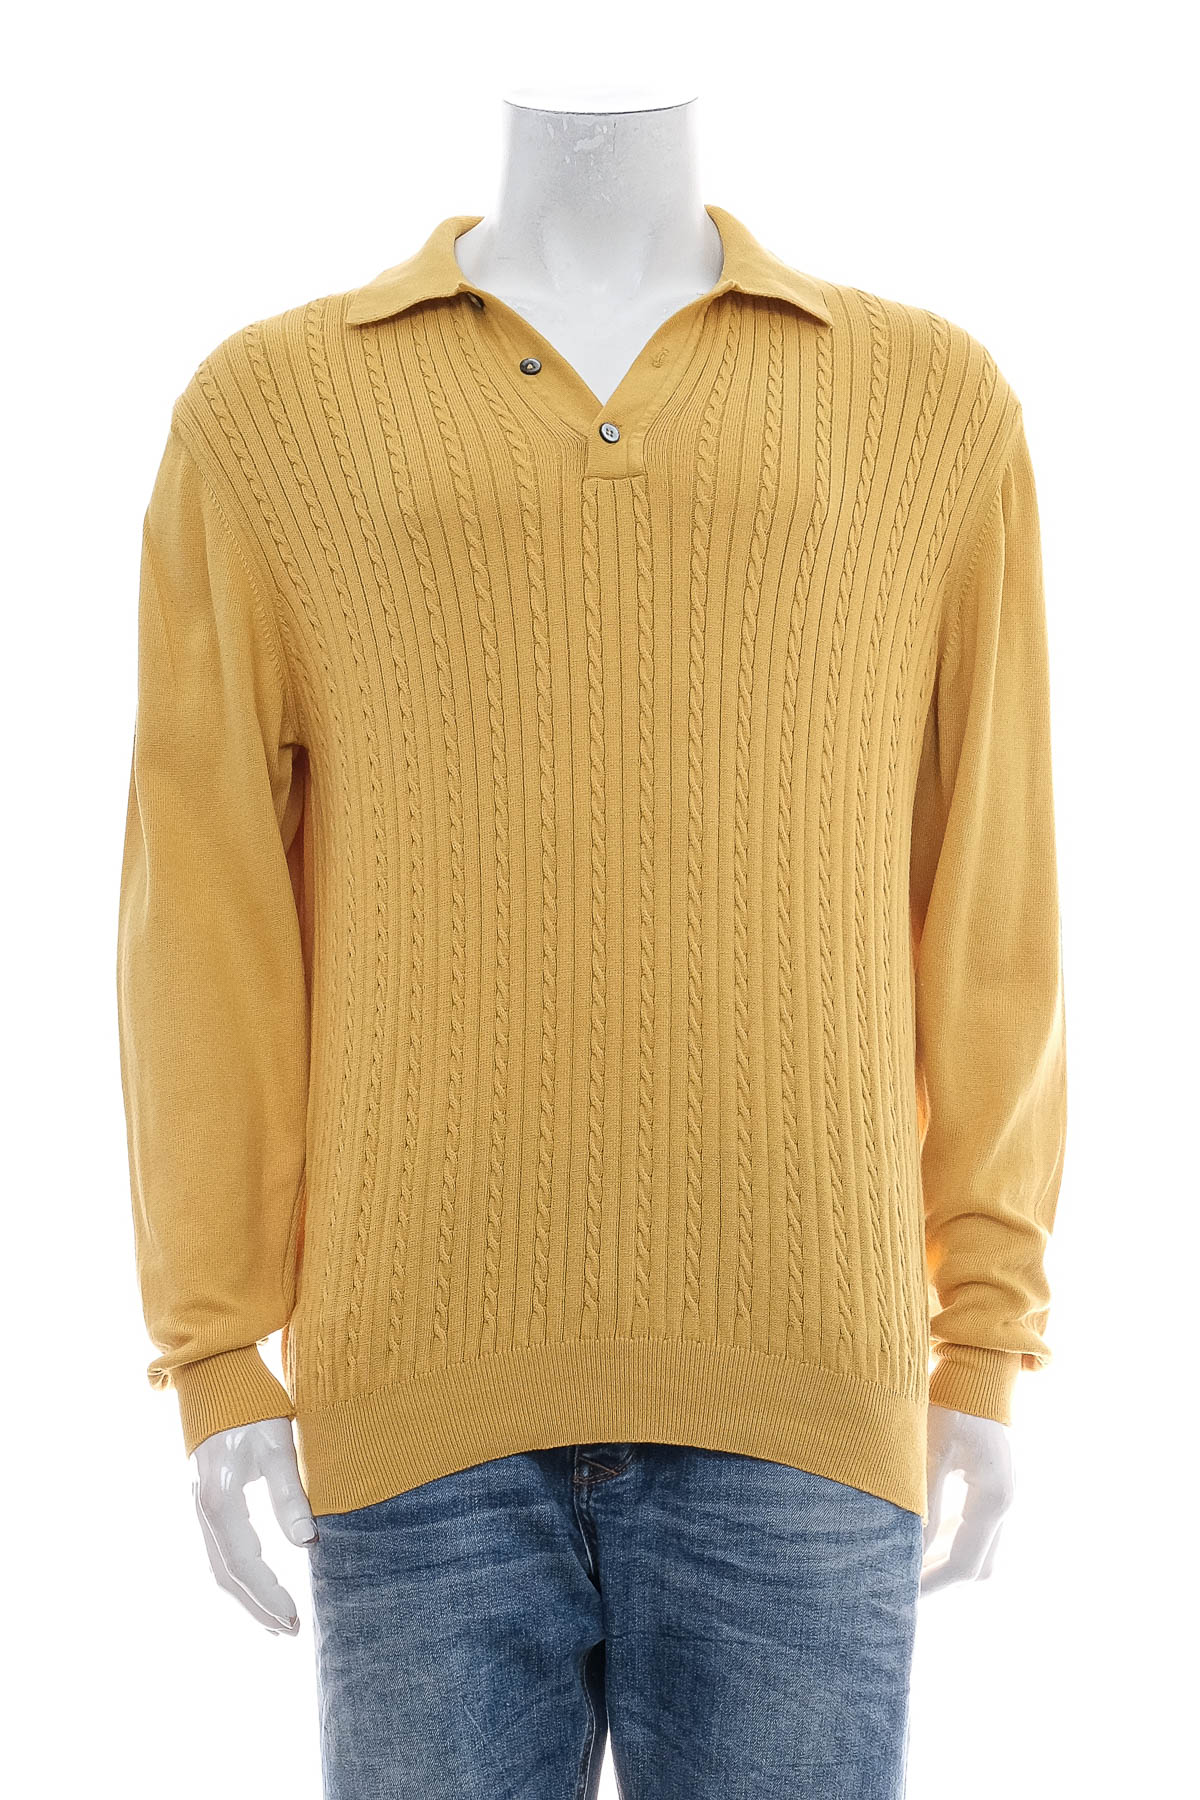 Men's sweater - Today's - 0